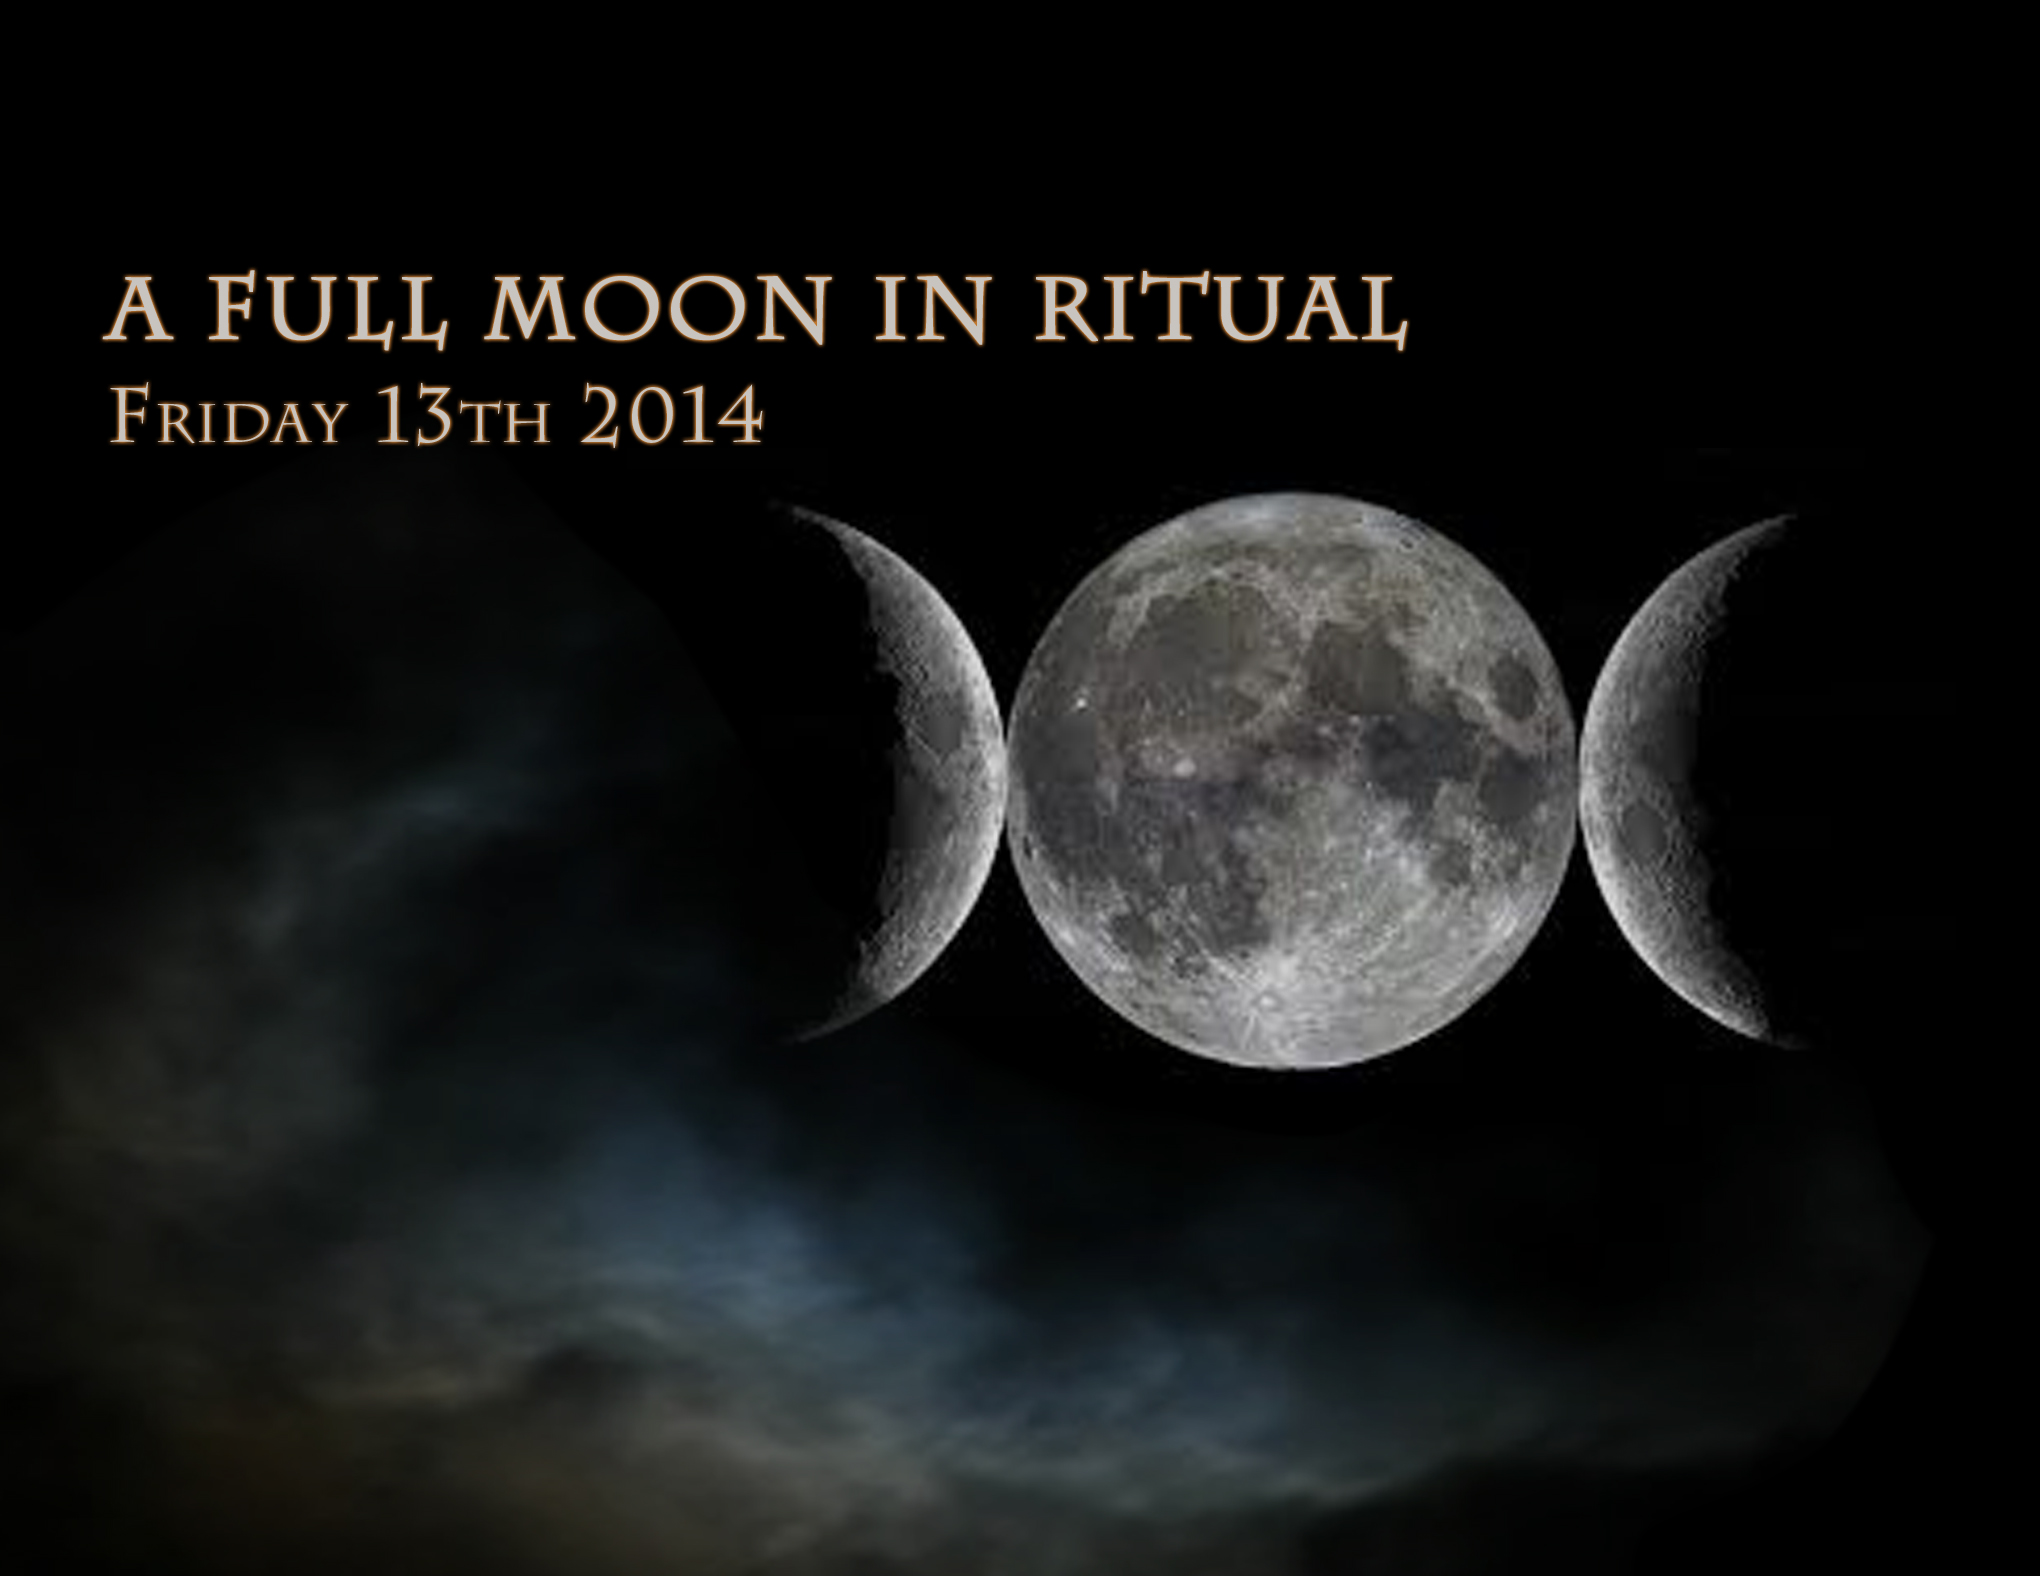 A Full Moon in Ritual